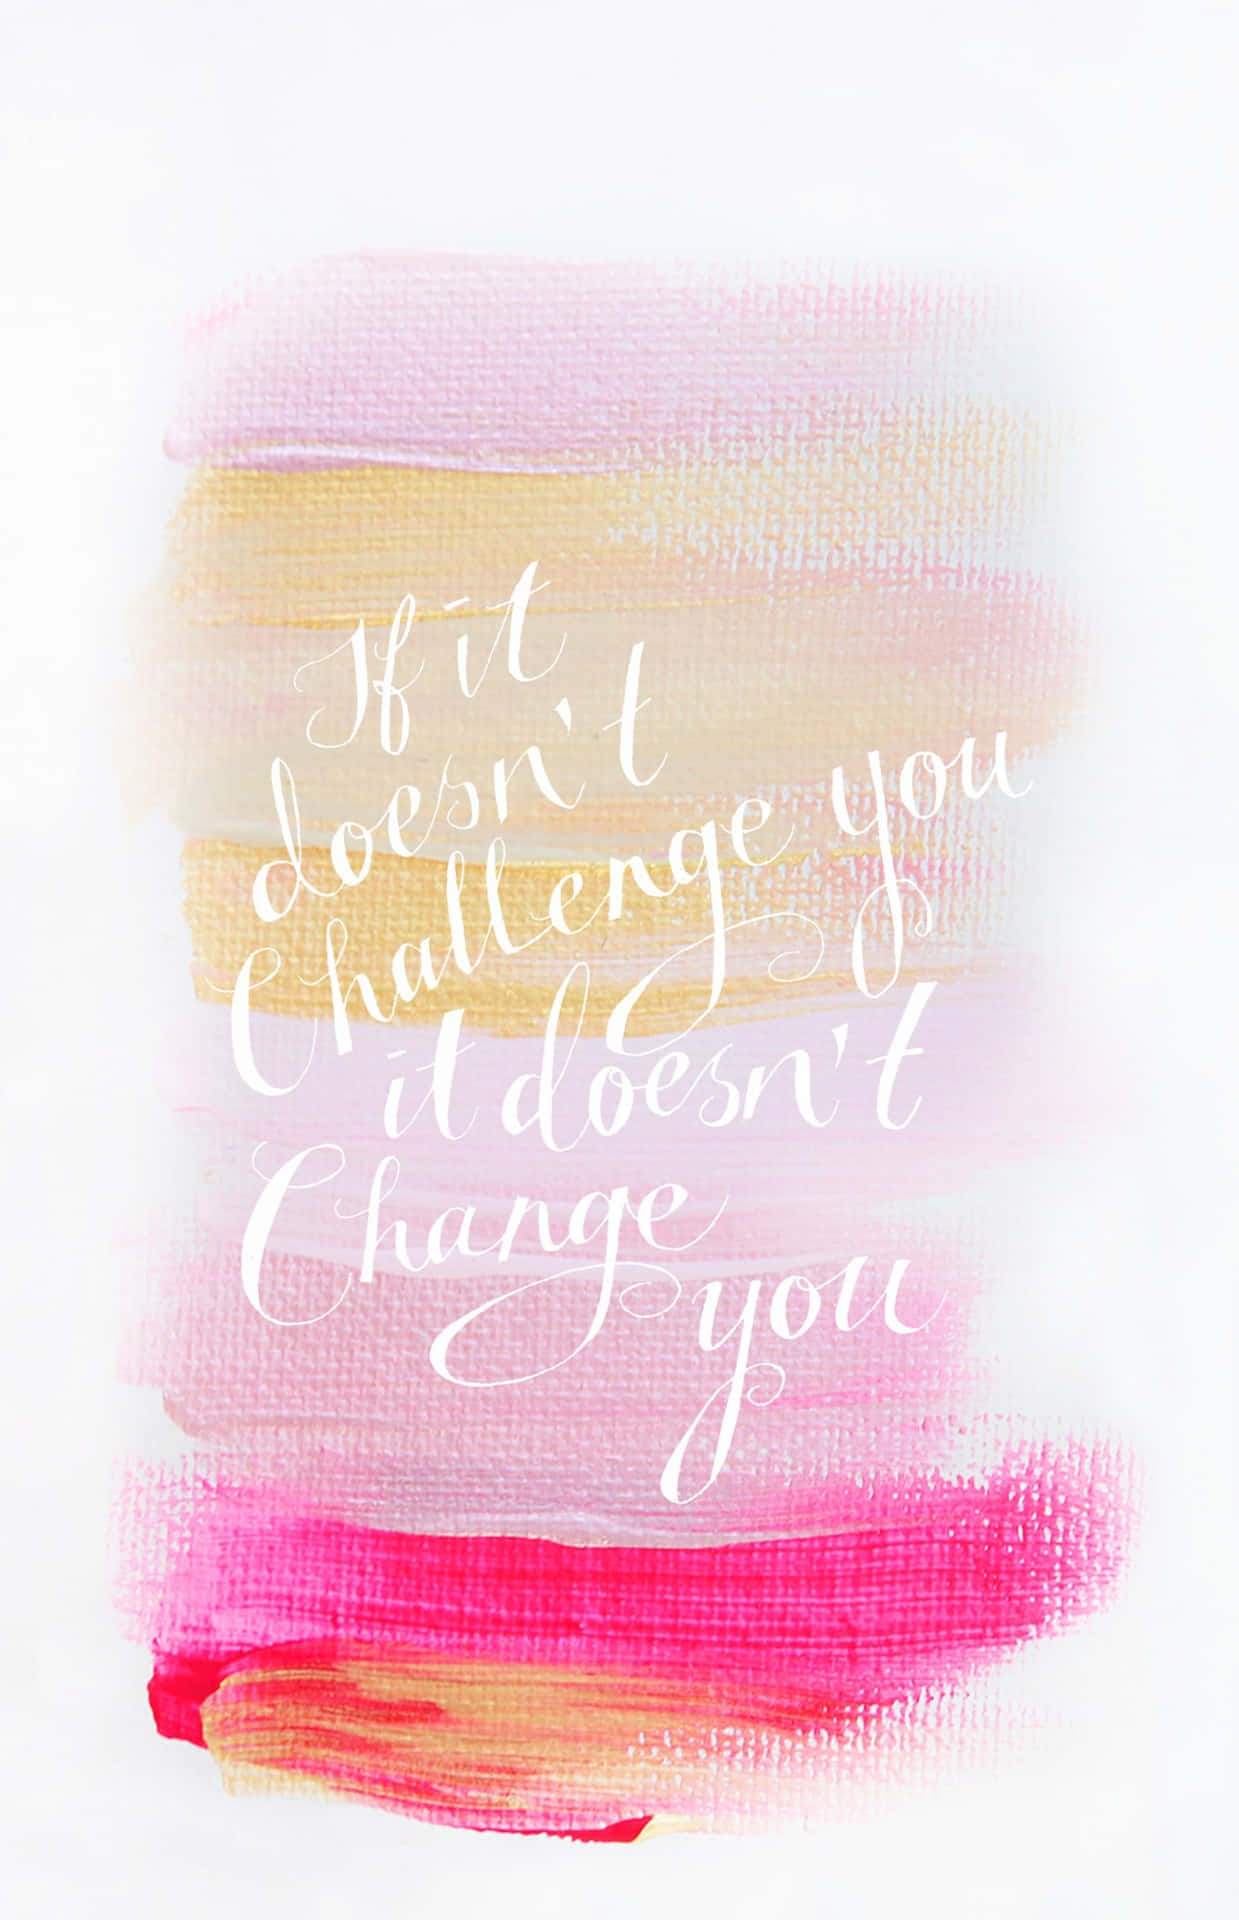 Wenndu Dich Nicht Herausforderst, Wirst Du Dich Nicht Verändern. Wallpaper